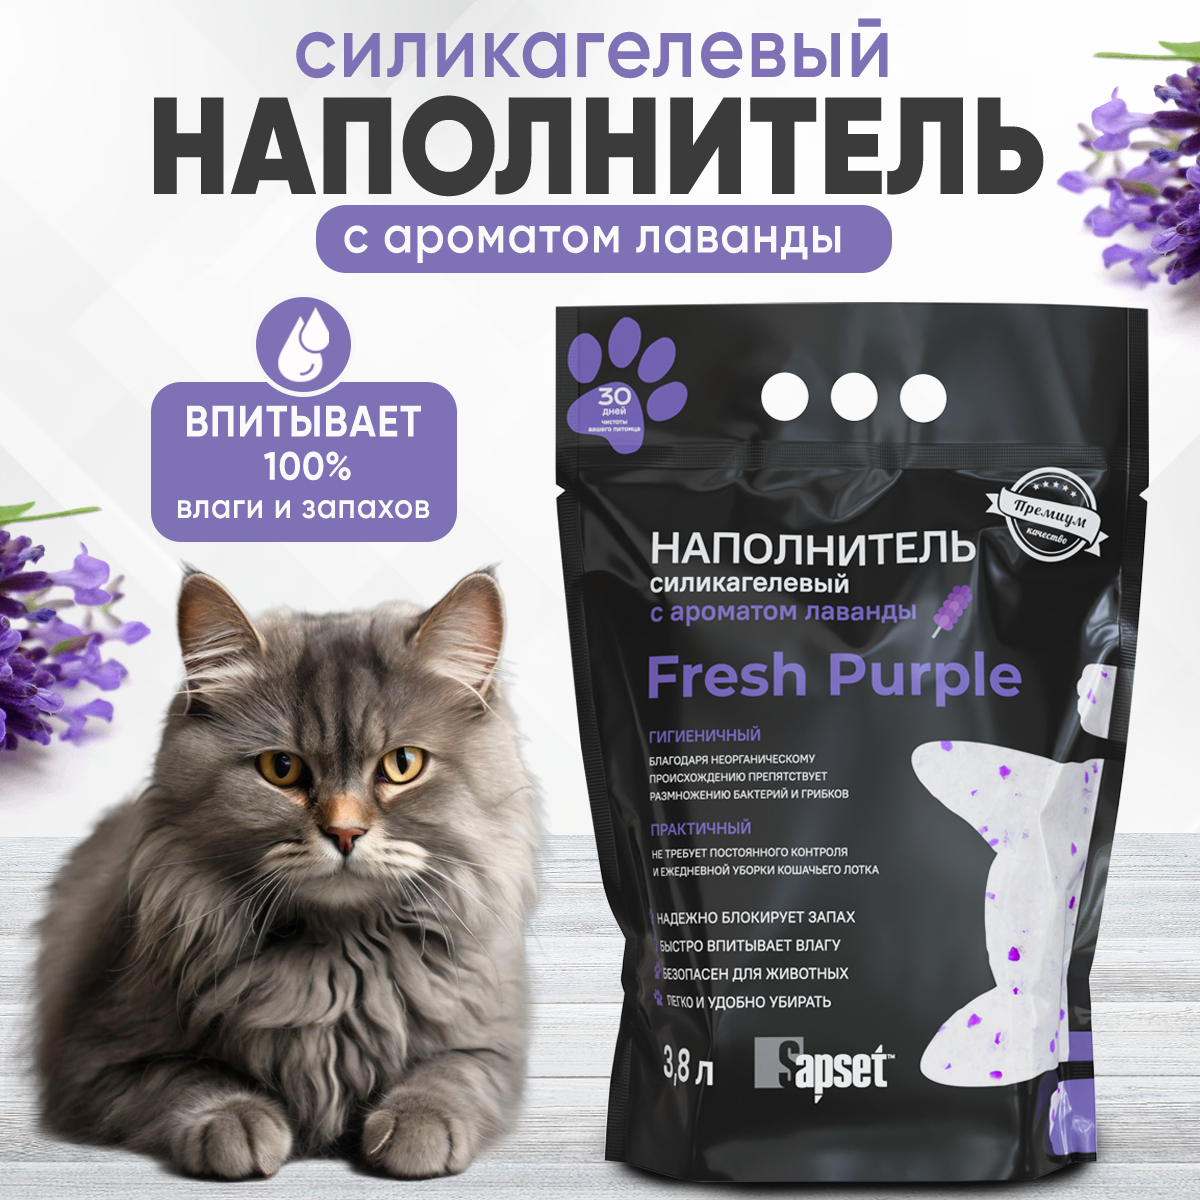 Наполнитель силикагелевый для кошек Sapset Fresh purple наполнитель силикагель для кошачьего туалета впитывающий для кошек и котят с ароматом лаванды